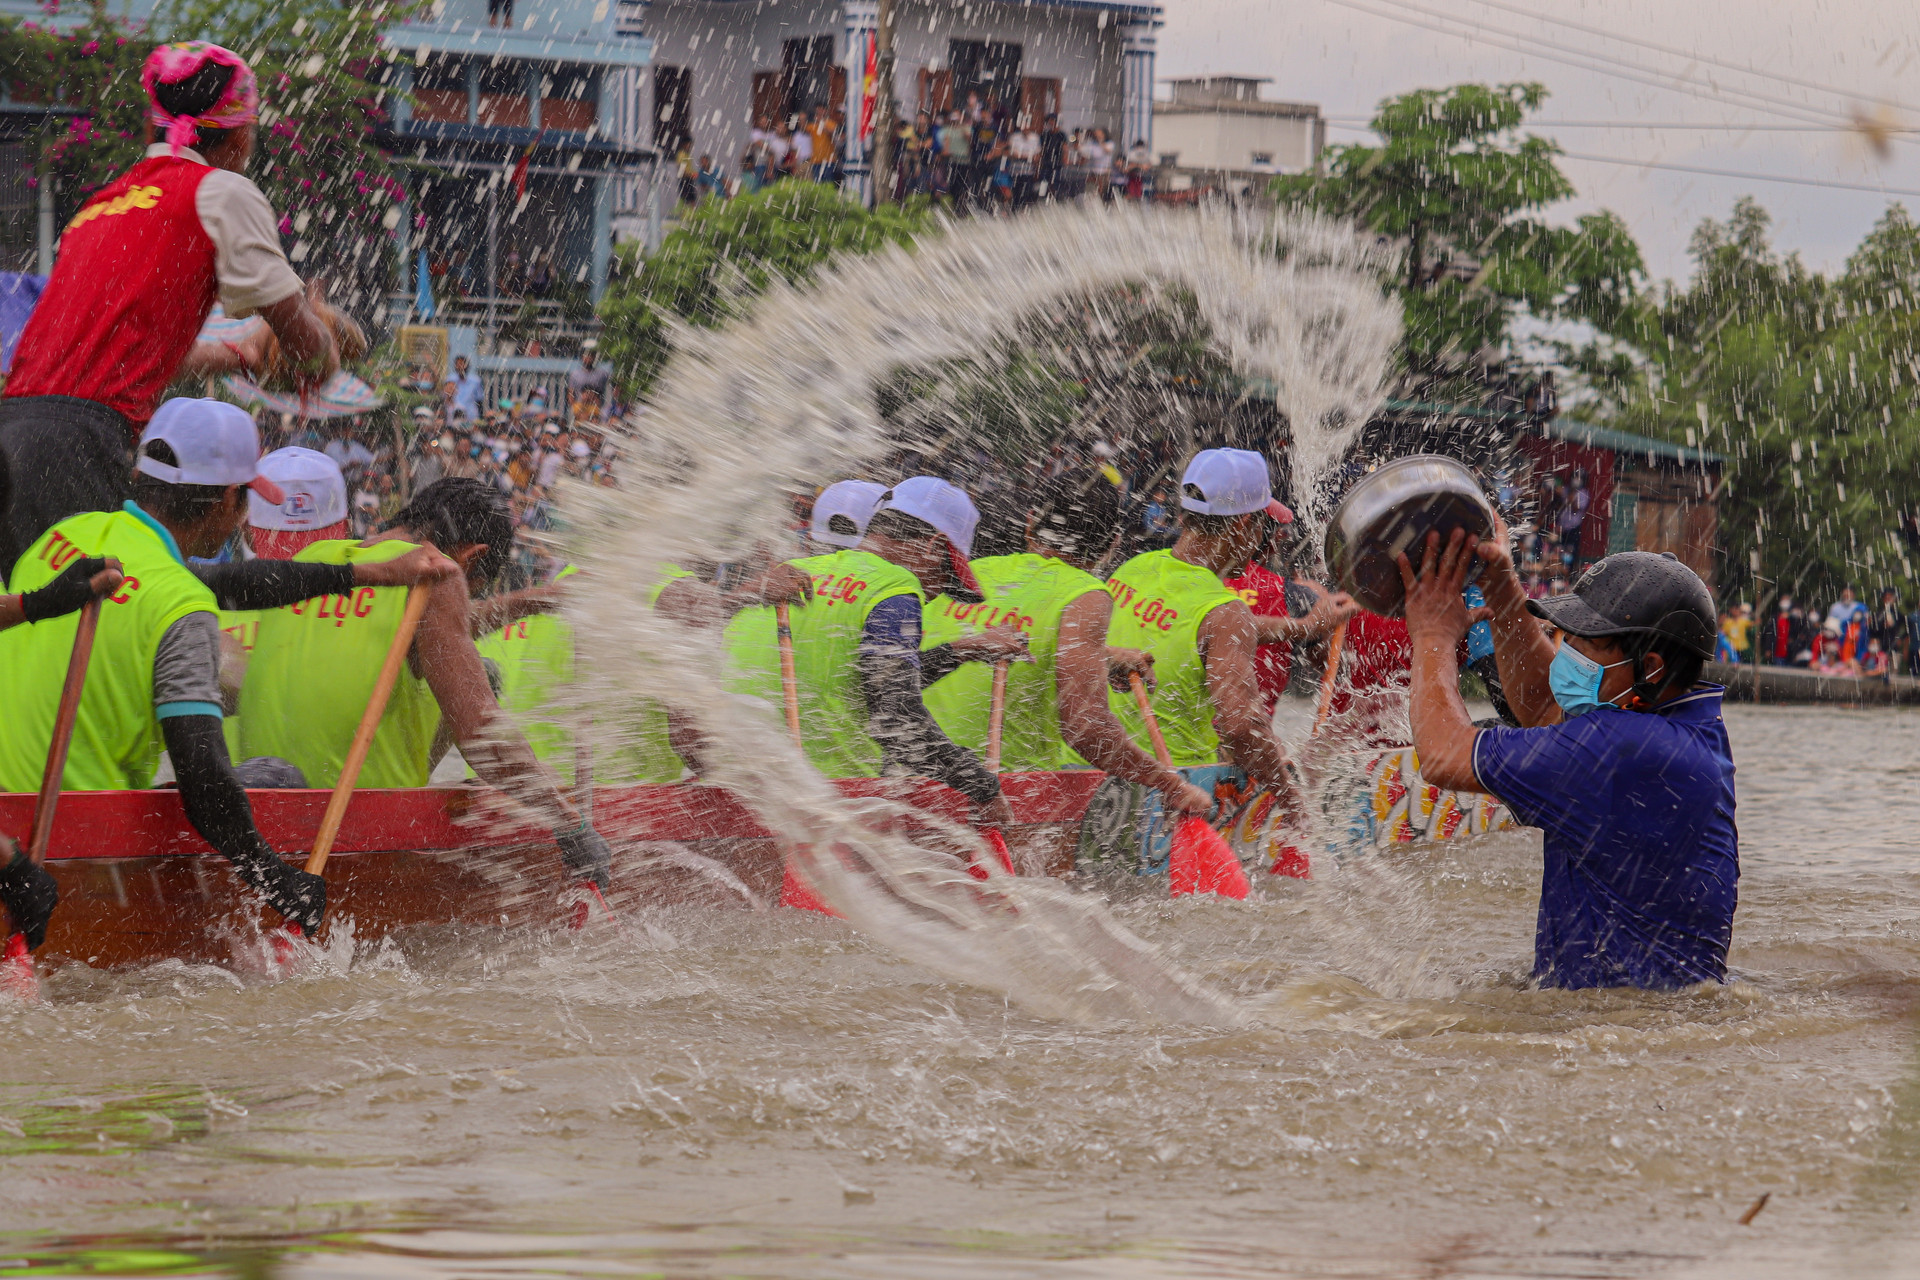 Ngày 27/8/2019, Bộ trưởng Bộ Văn Hóa - Thể Thao - Du Lịch Nguyễn Ngọc Thiện đã ký quyết định đưa lễ hội đua, bơi thuyền trên sông Kiến Giang vào danh mục di sản văn hóa phi vật thể Quốc gia.